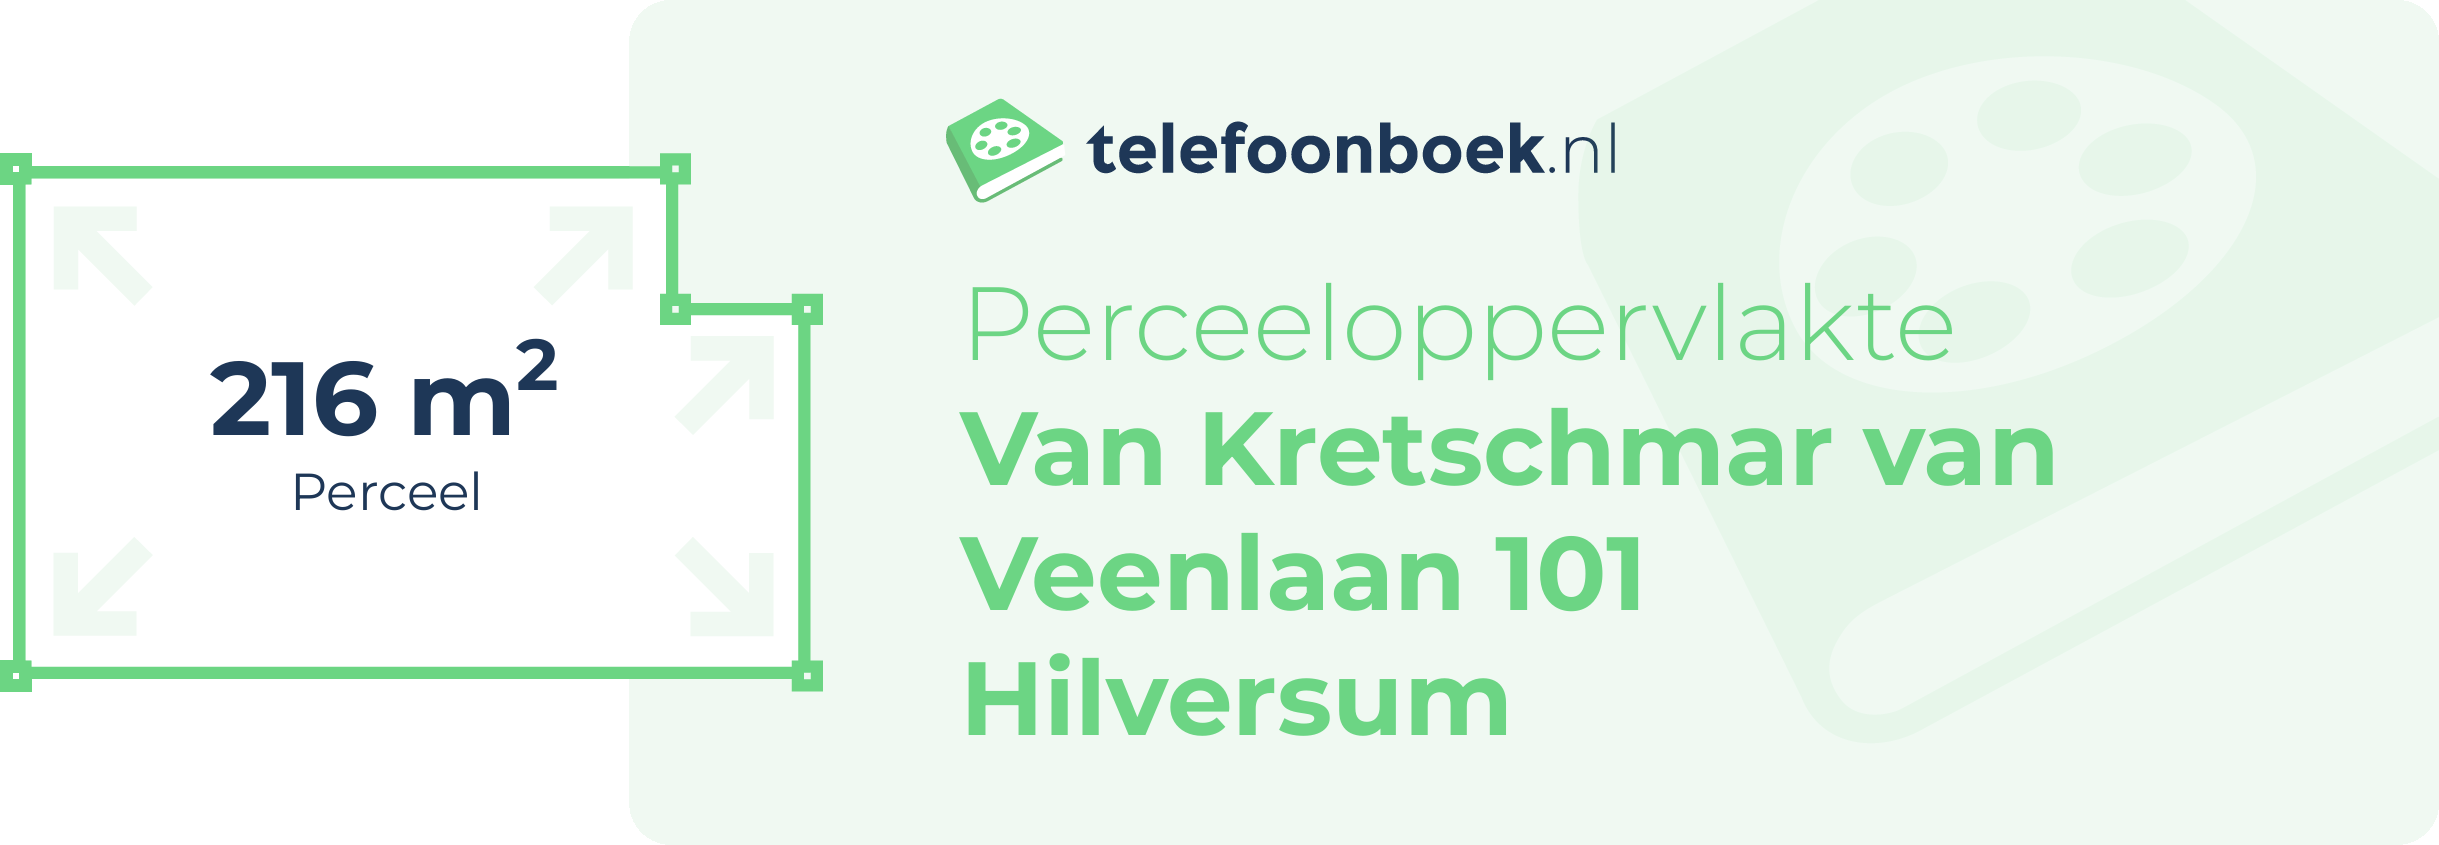 Perceeloppervlakte Van Kretschmar Van Veenlaan 101 Hilversum